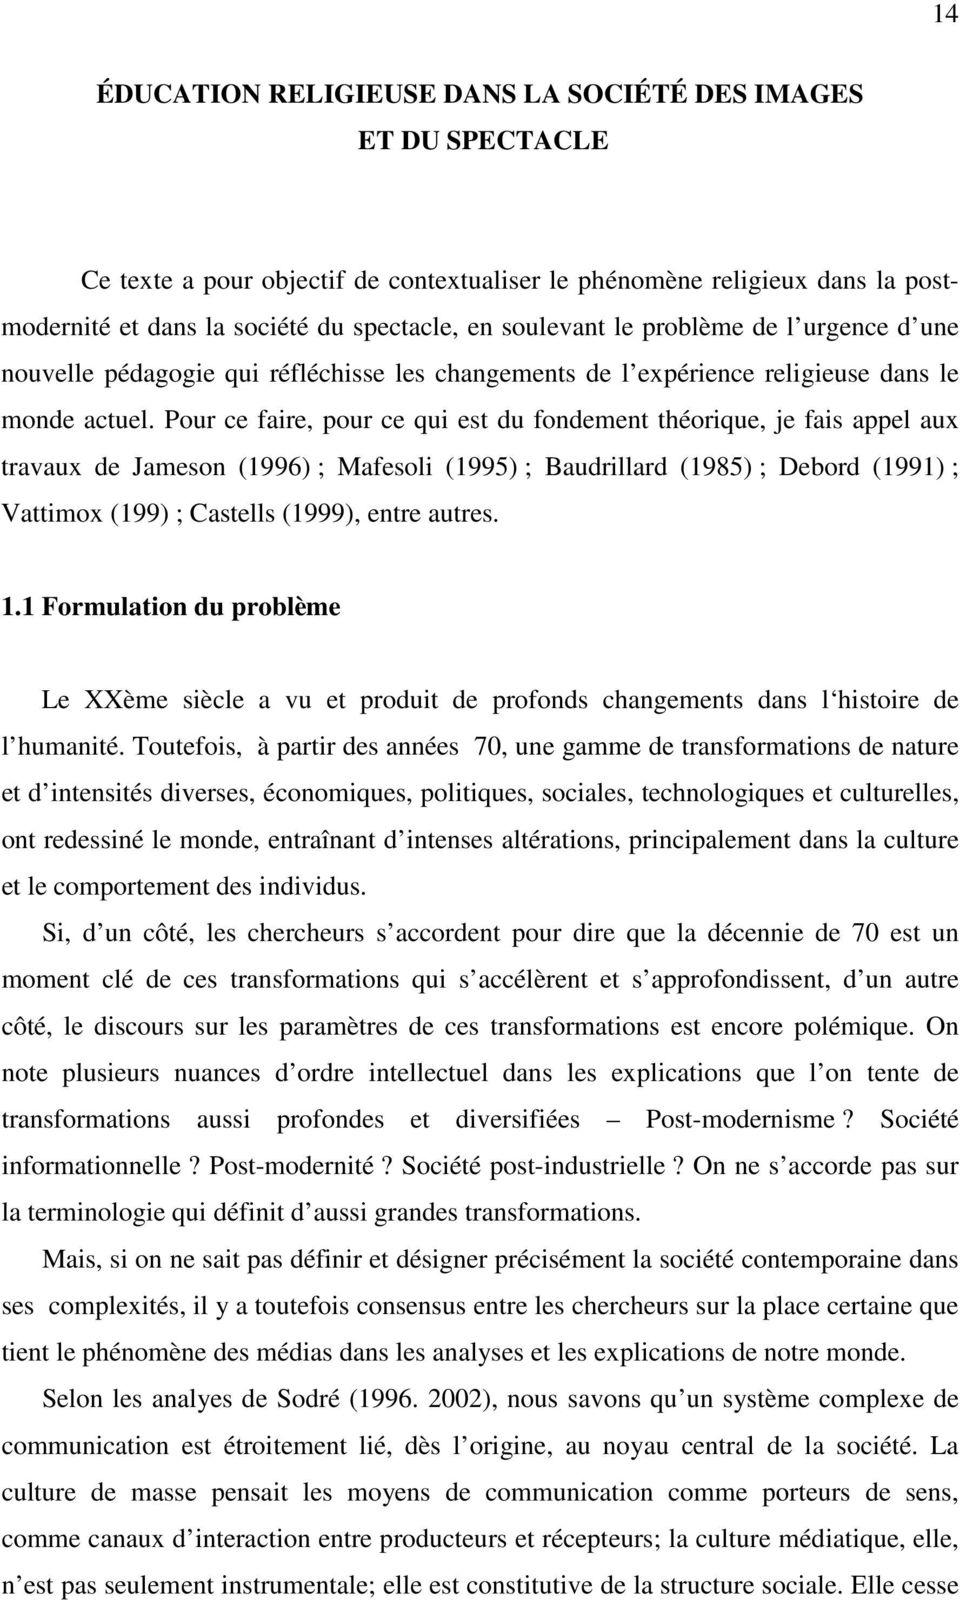 Pour ce faire, pour ce qui est du fondement théorique, je fais appel aux travaux de Jameson (1996) ; Mafesoli (1995) ; Baudrillard (1985) ; Debord (1991) ; Vattimox (199) ; Castells (1999), entre